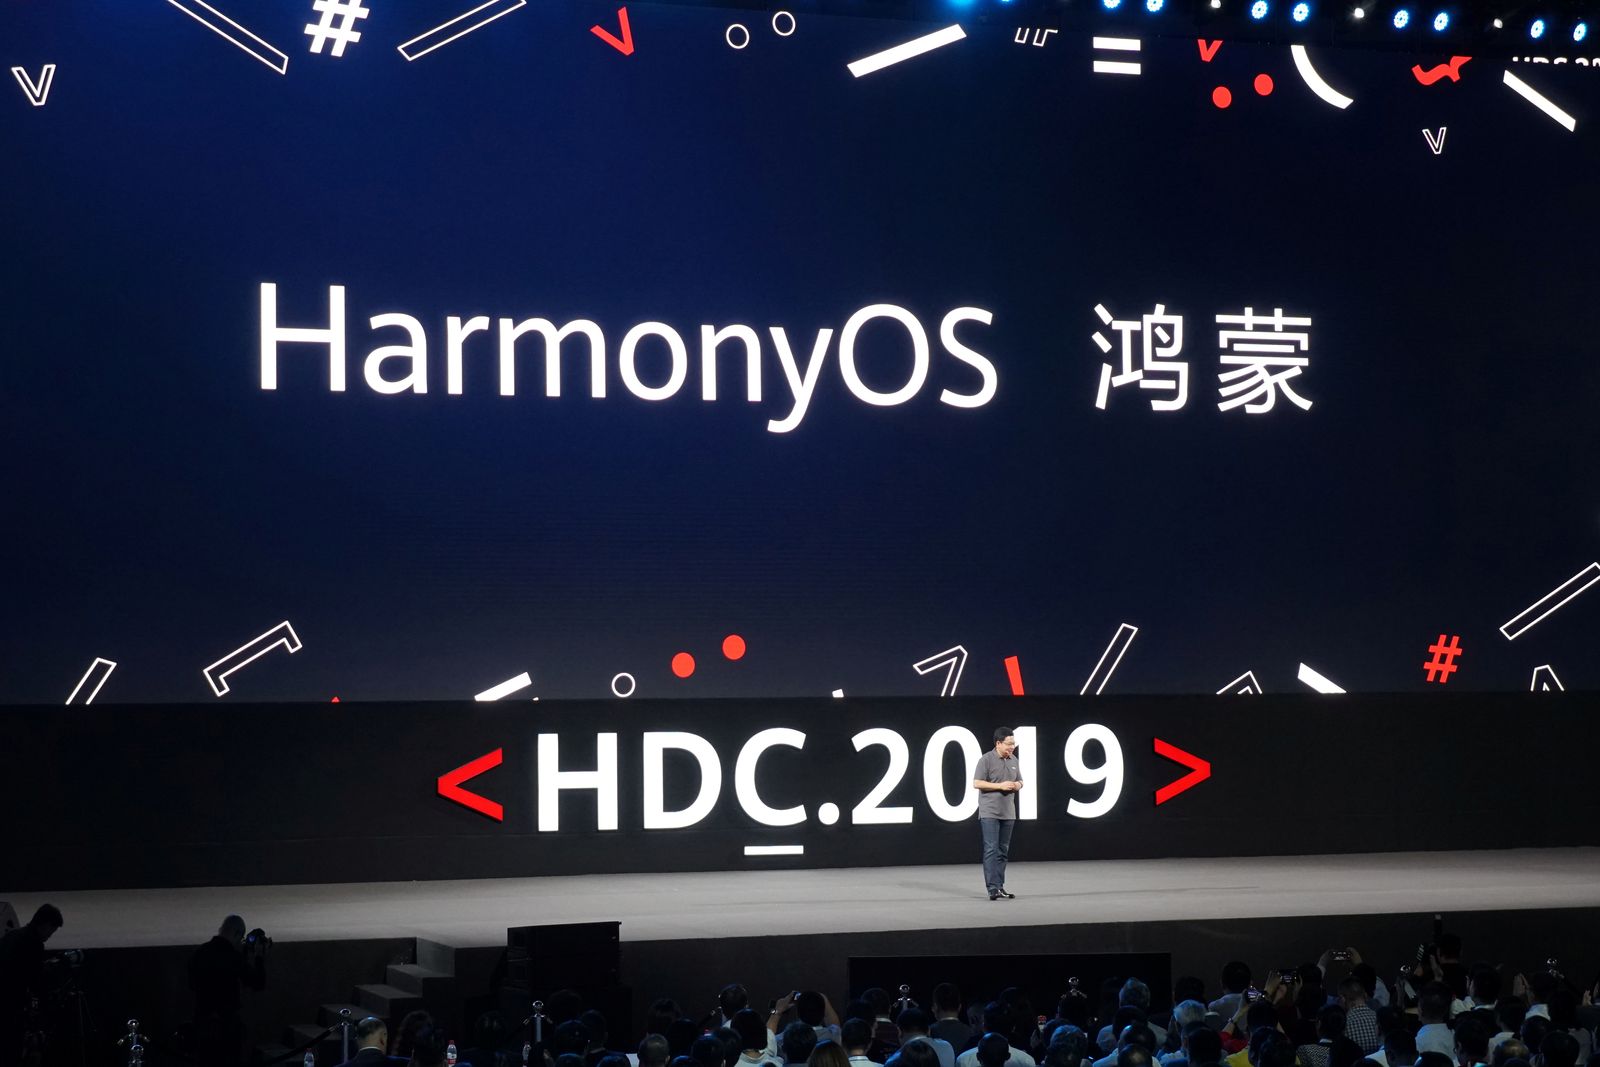 الكشف عن نظام تشغيل هواوي HarmonyOS في مؤتمر الشركة للمطورين HDC 2019 - REUTERS